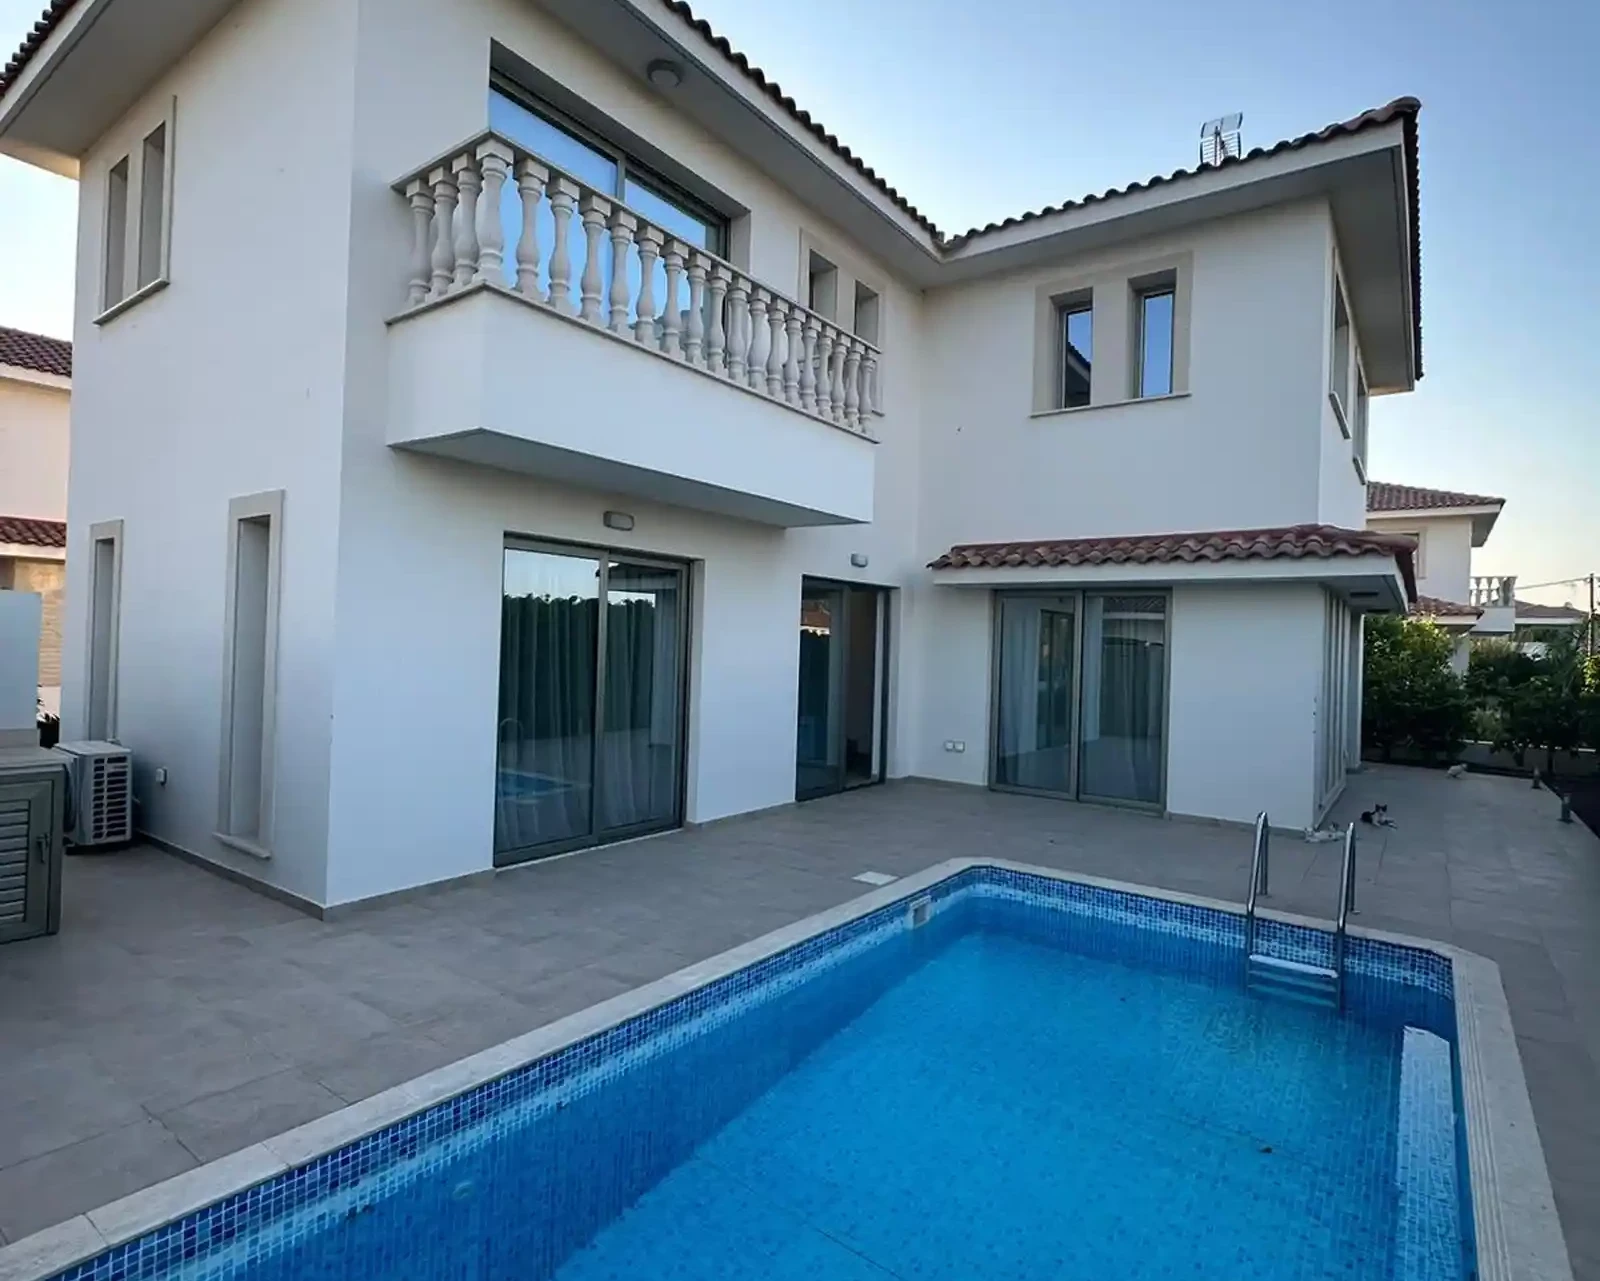 5-bedroom villa to rent €2.200, image 1